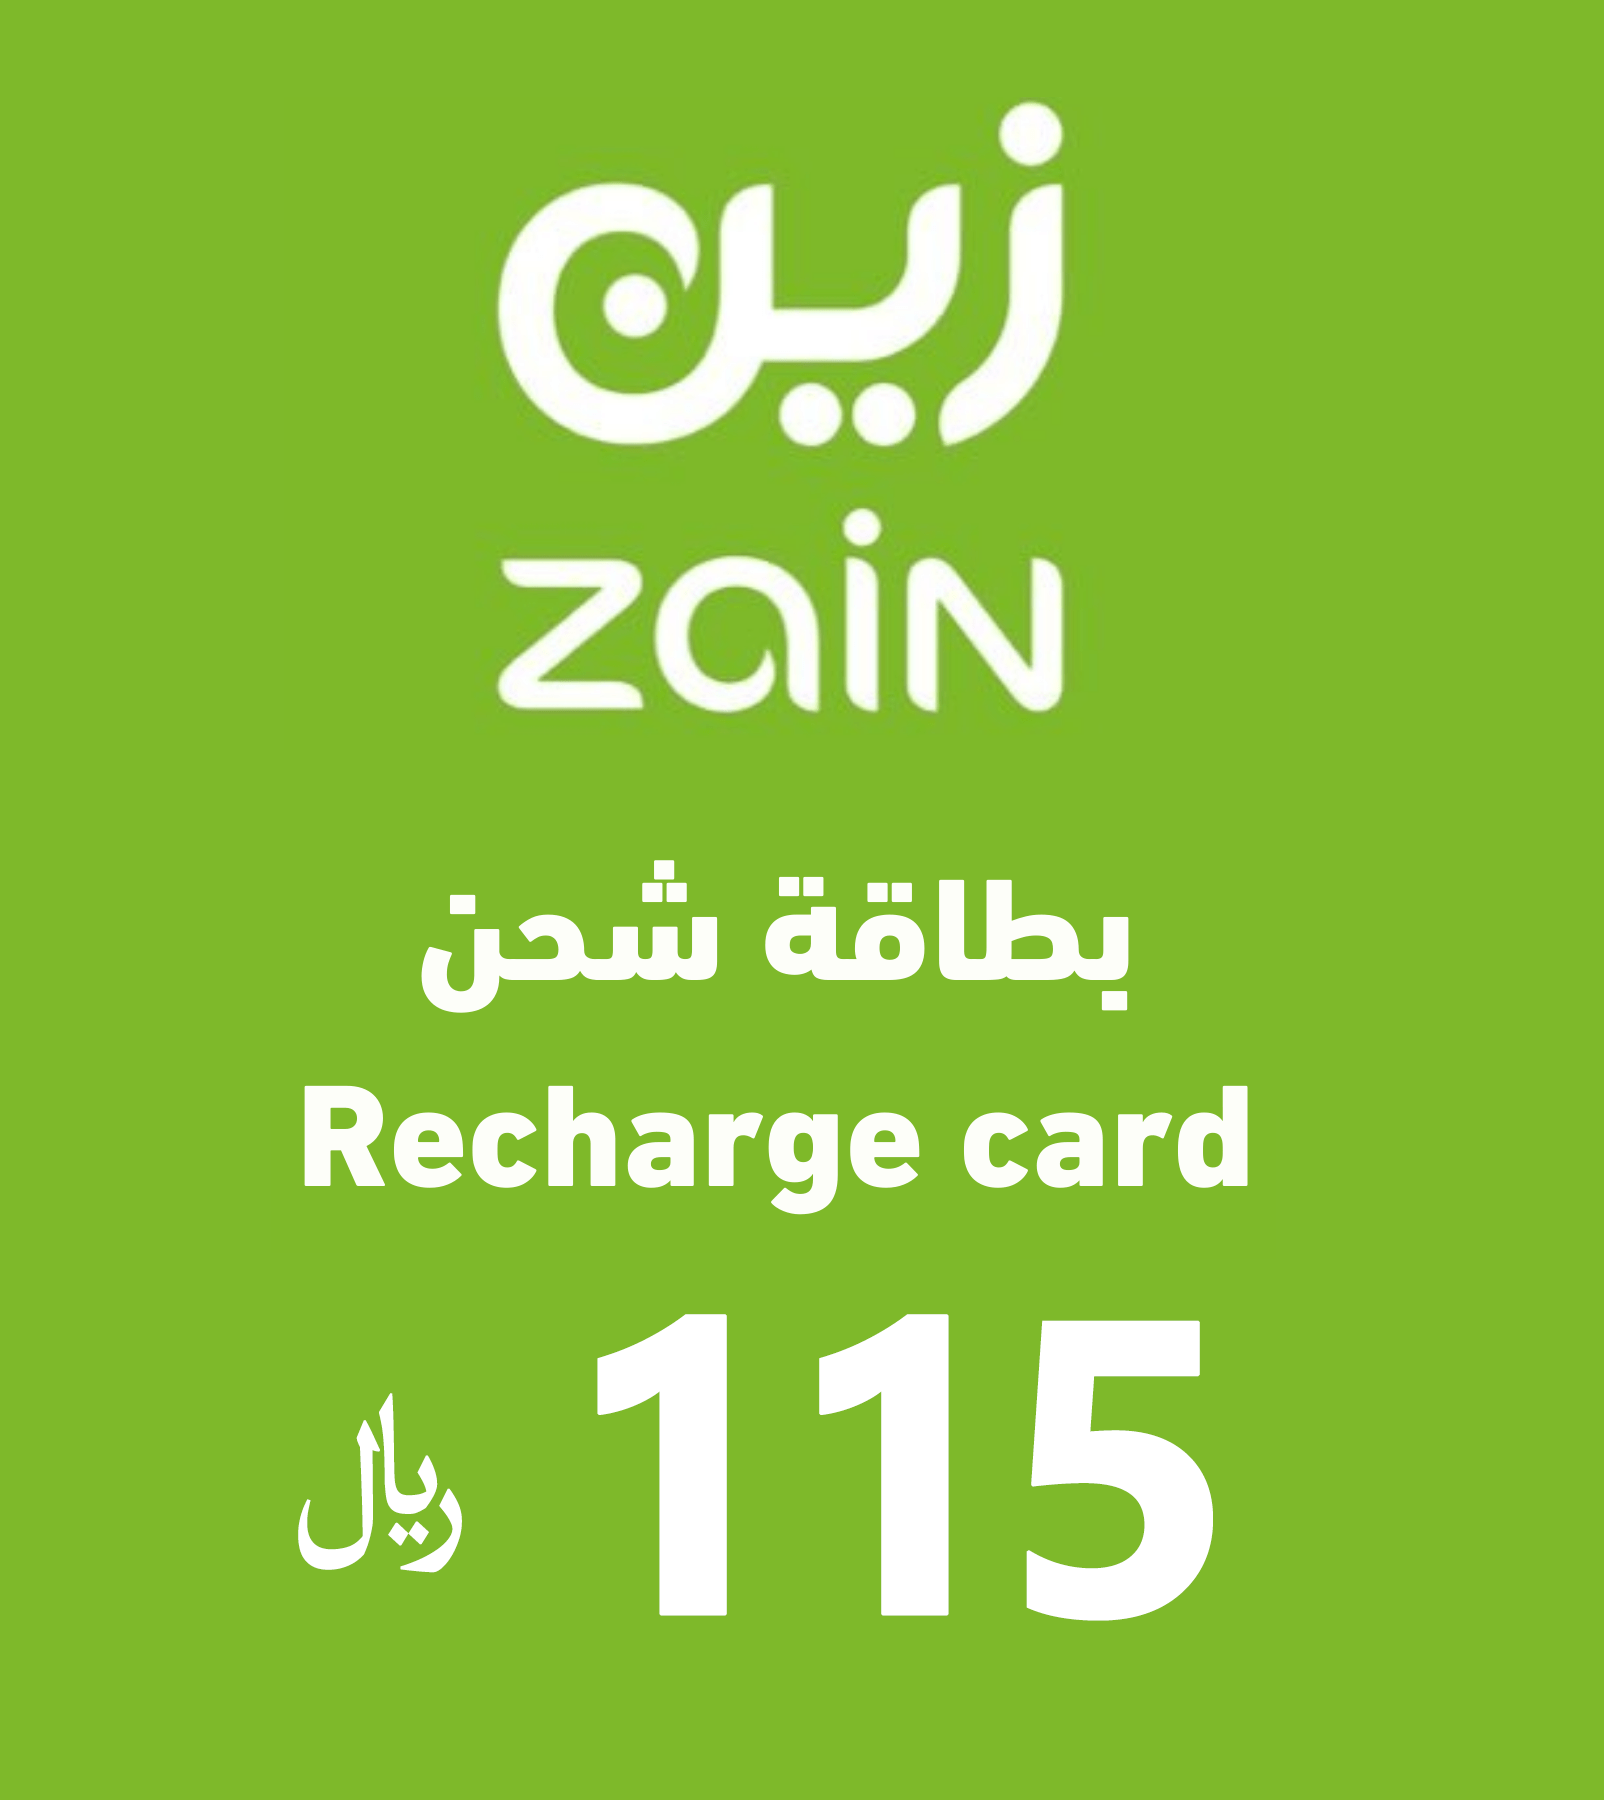 Zain Recharge Card - 115 SAR - KSA